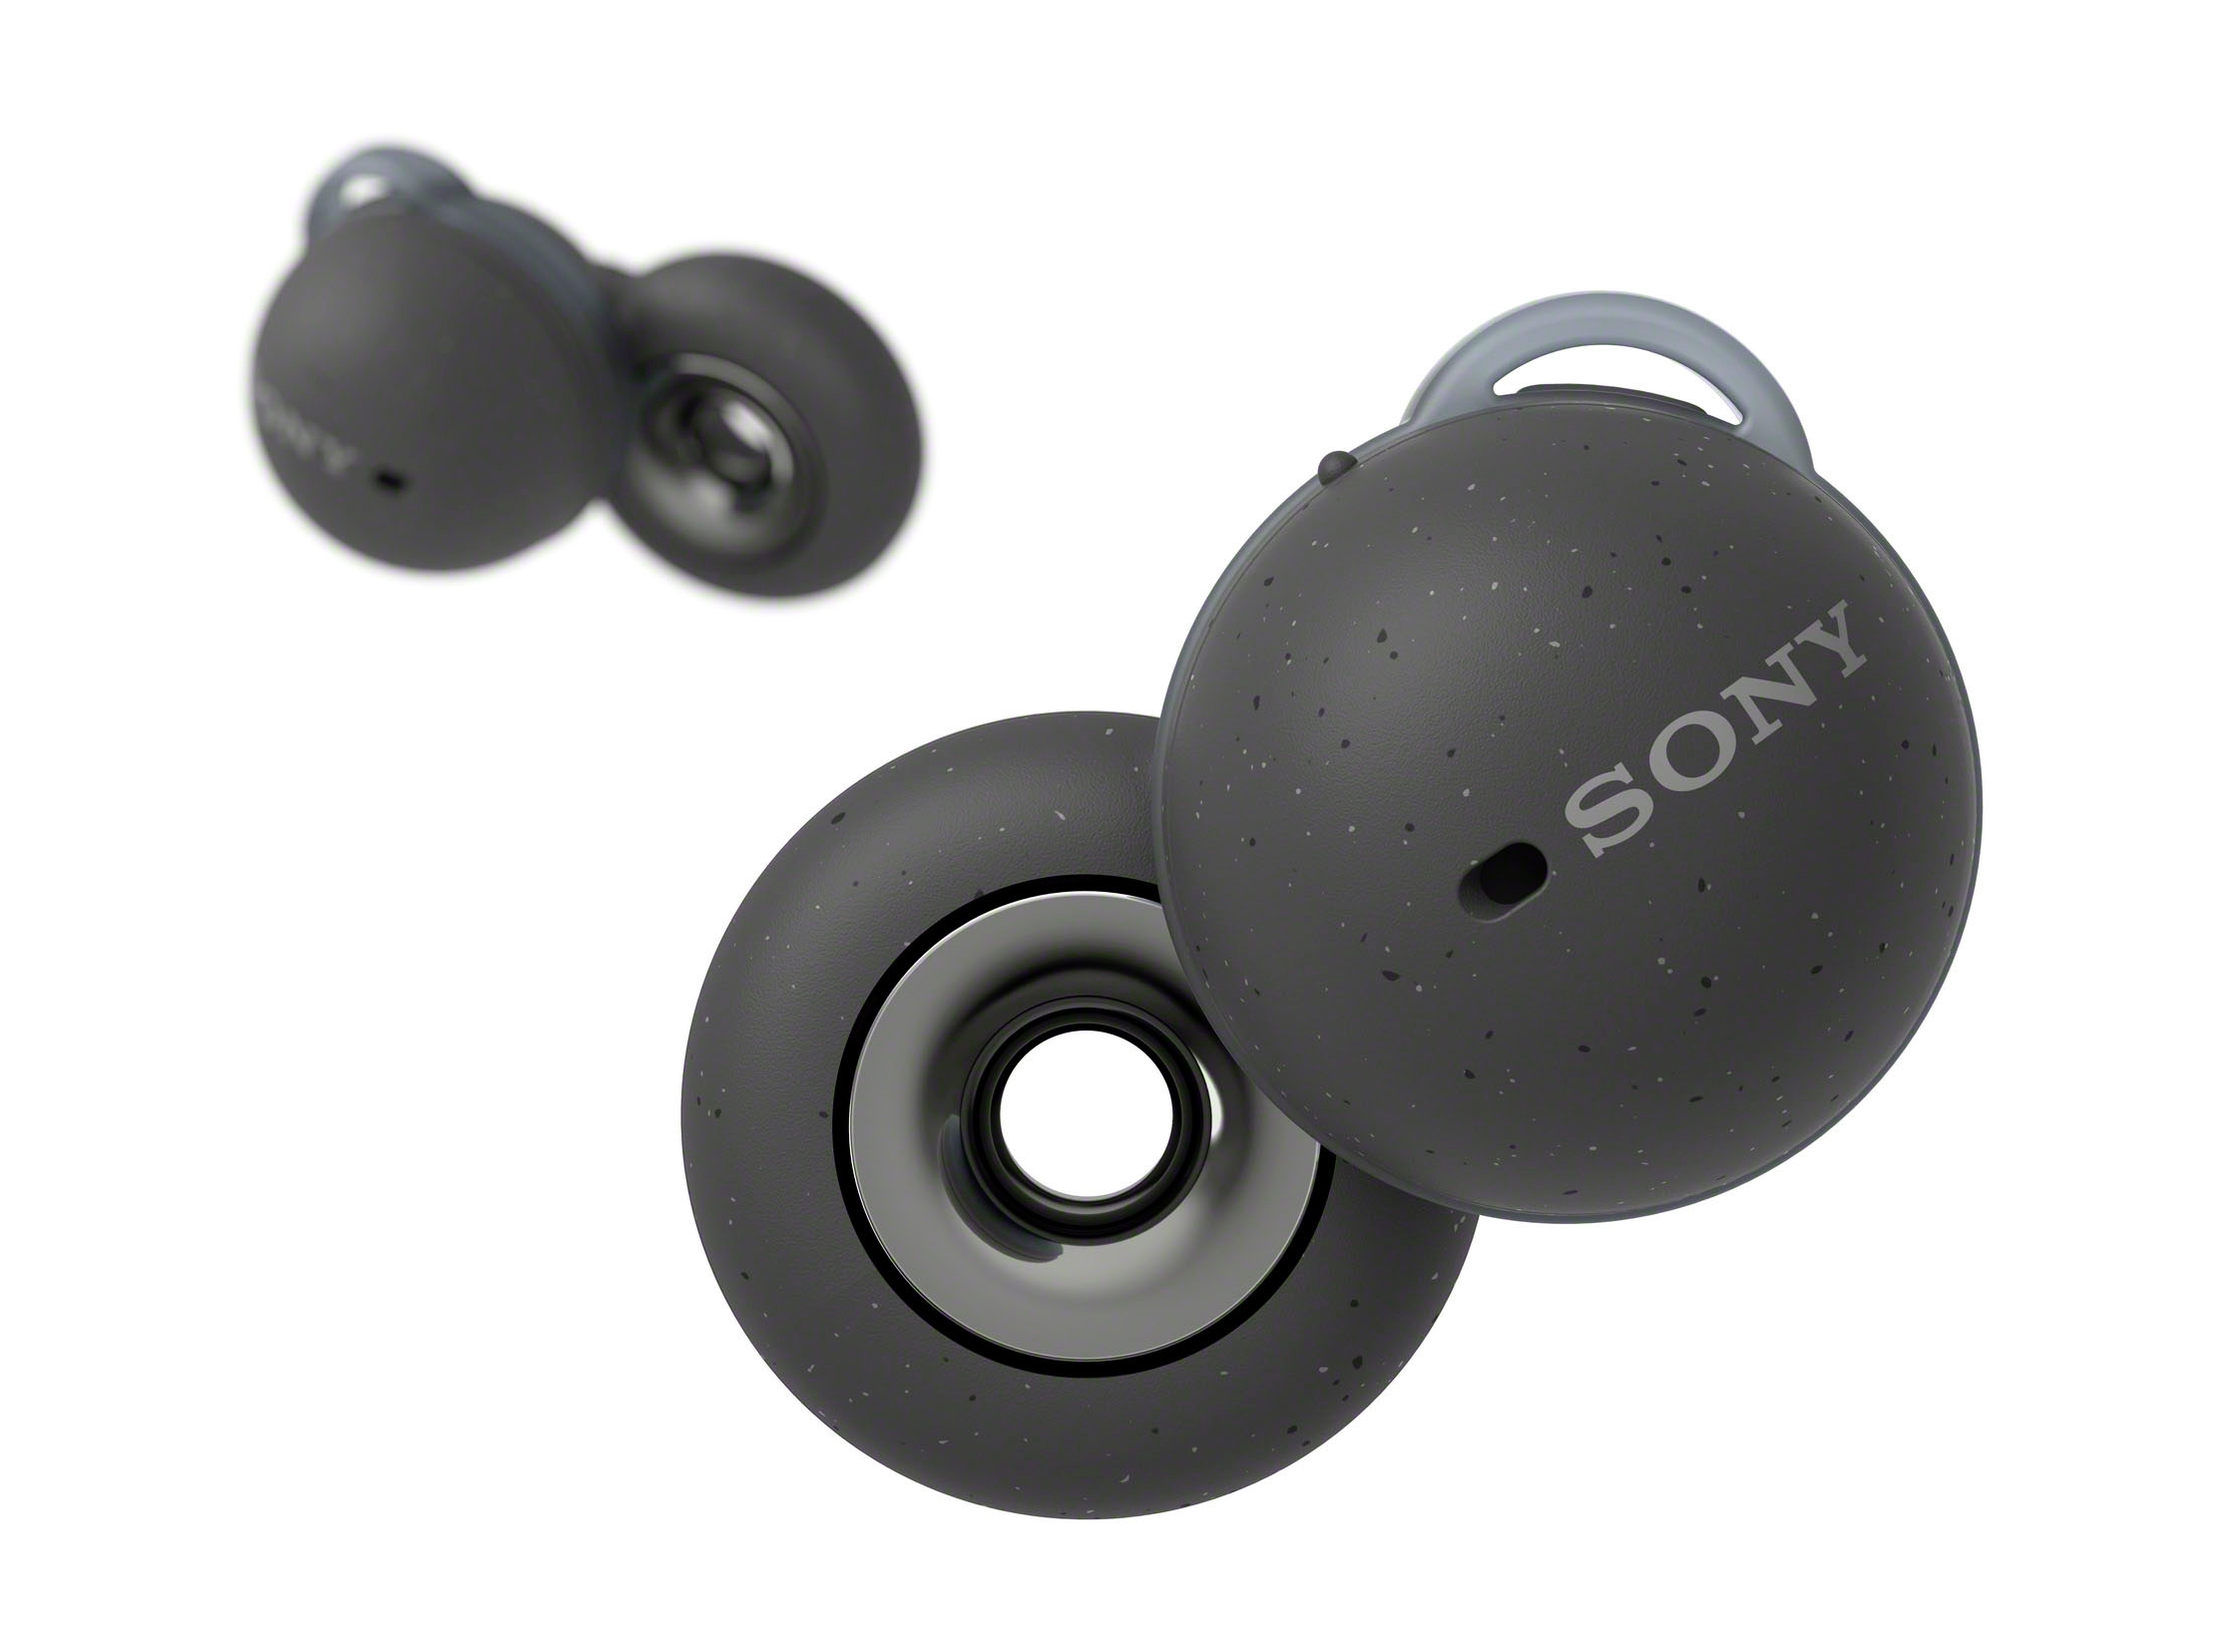 Sony se prepara para lanzar los auriculares Linkbuds TWS con ANC y un diseño inusual